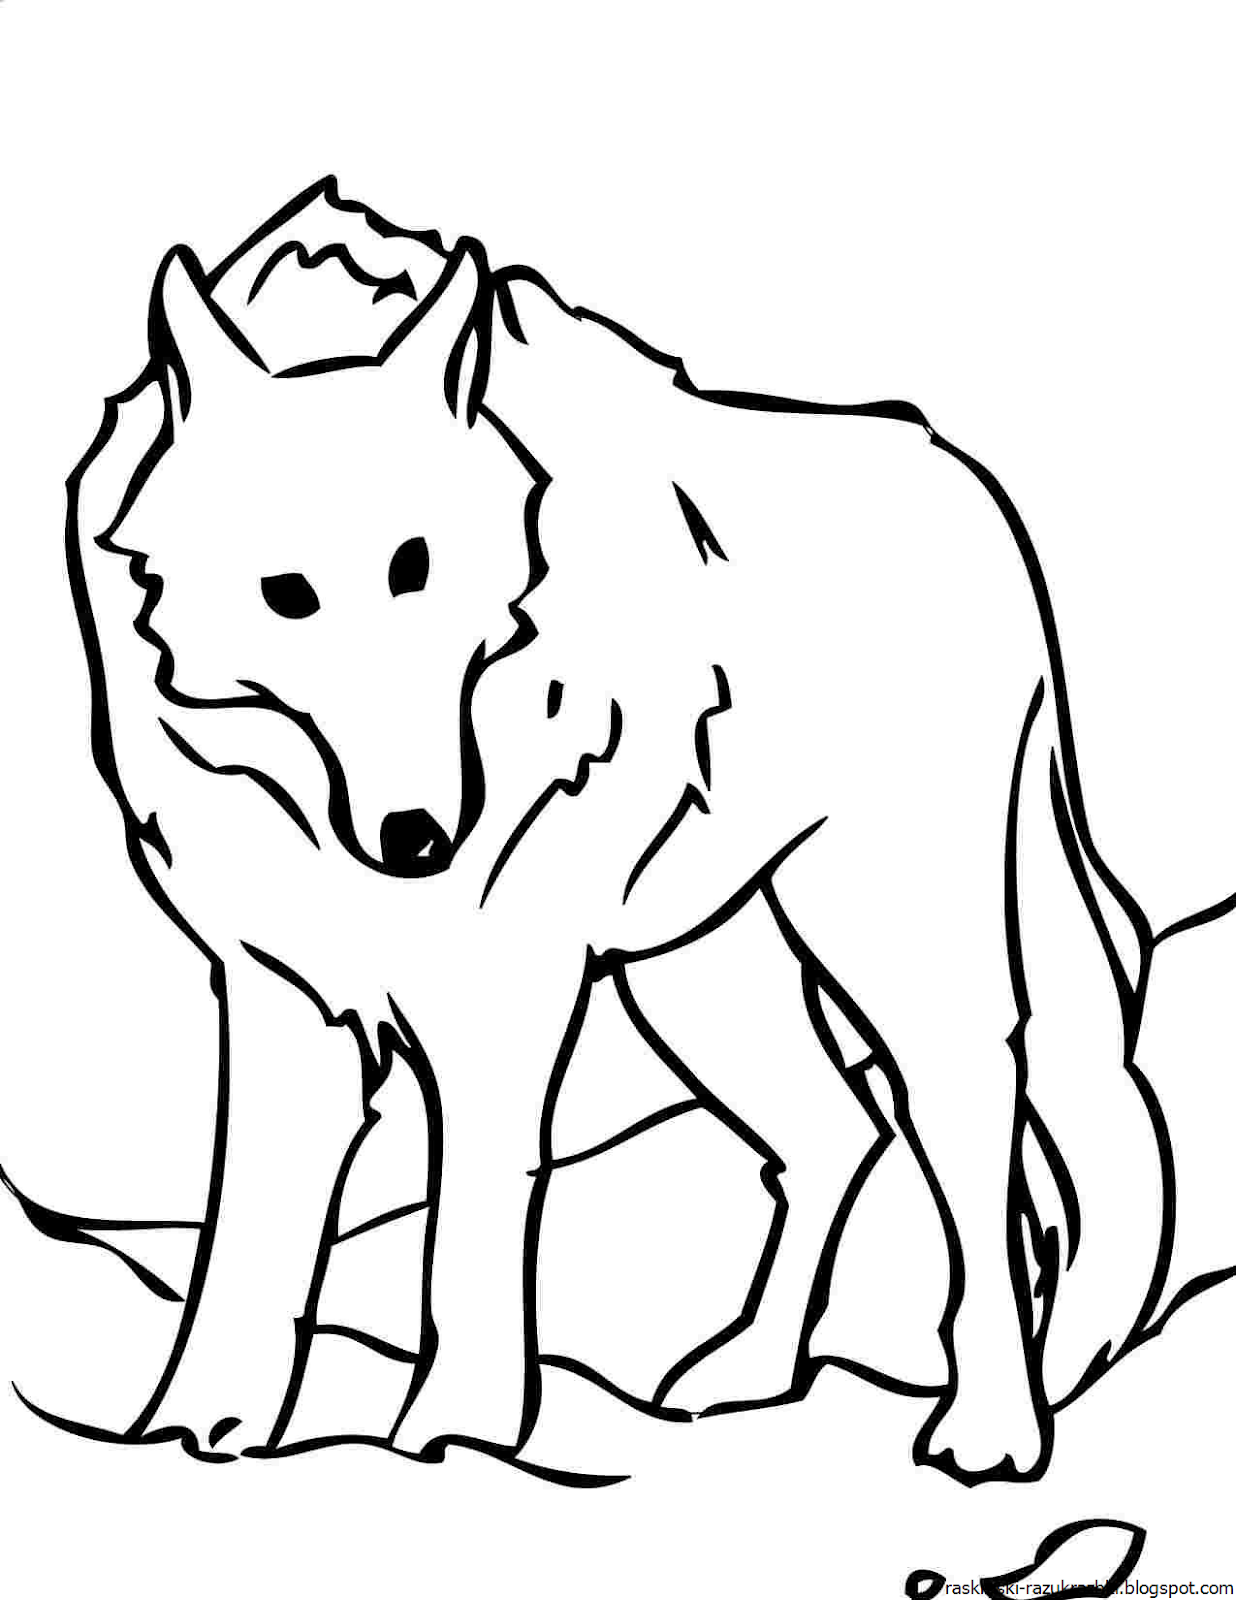 Раскраска волк. Волк раскраска для детей. Раскраска Волга. Волк рисунок для детей. Волк картинка распечатать